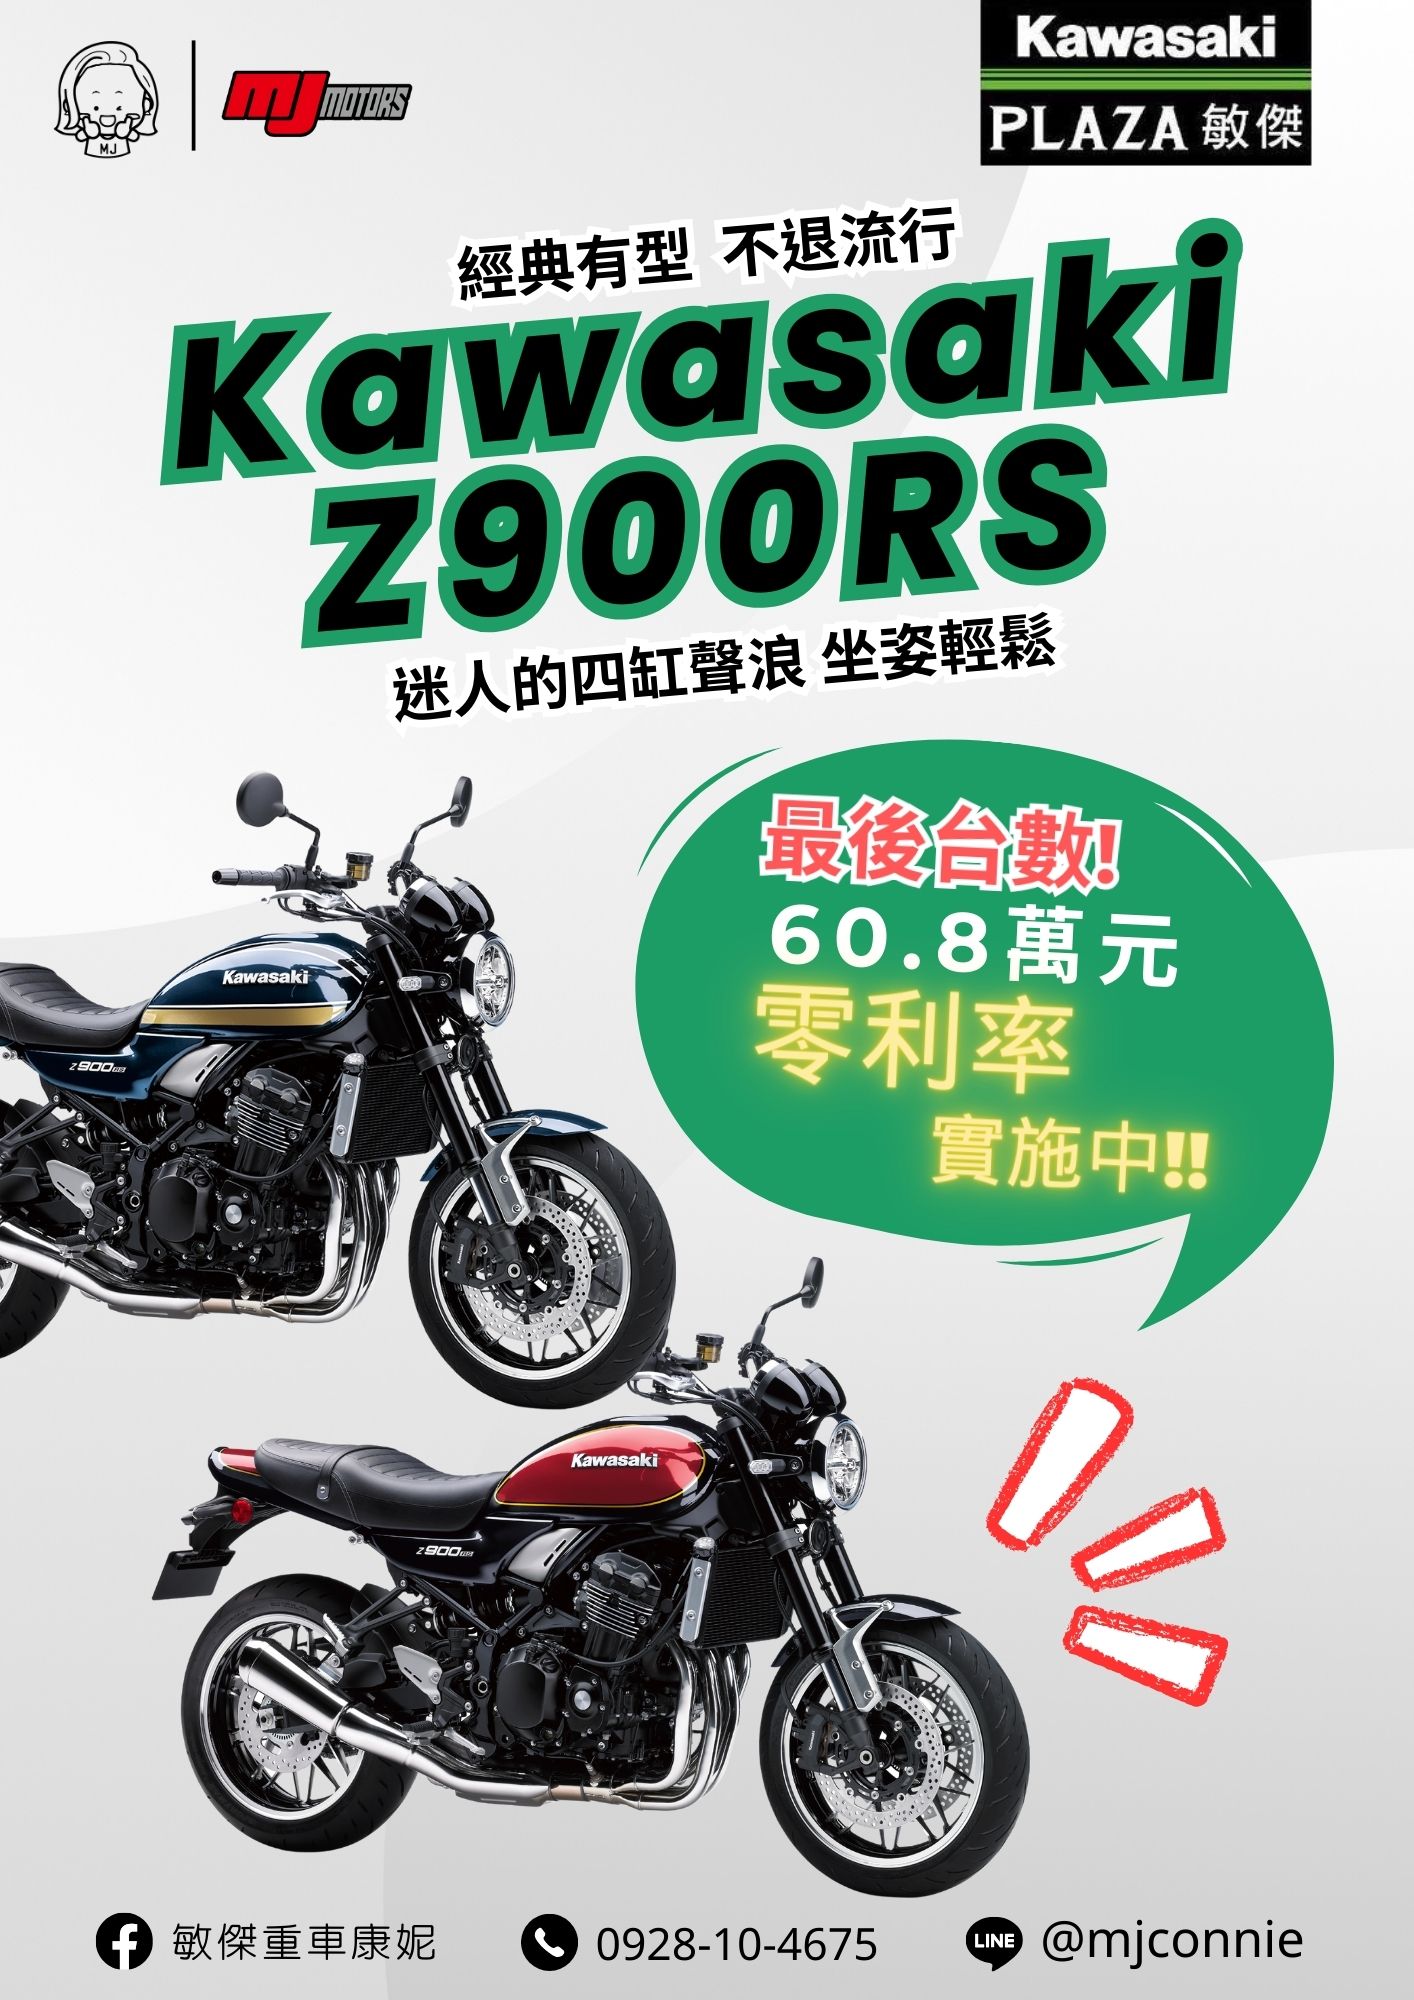 KAWASAKI Z900RS新車出售中 『敏傑康妮』Kawasaki Z900RS 典復古四缸車款~非Z900RS莫屬 !! 免頭款 免利息就把車騎回家^^ | 敏傑車業資深銷售專員 康妮 Connie